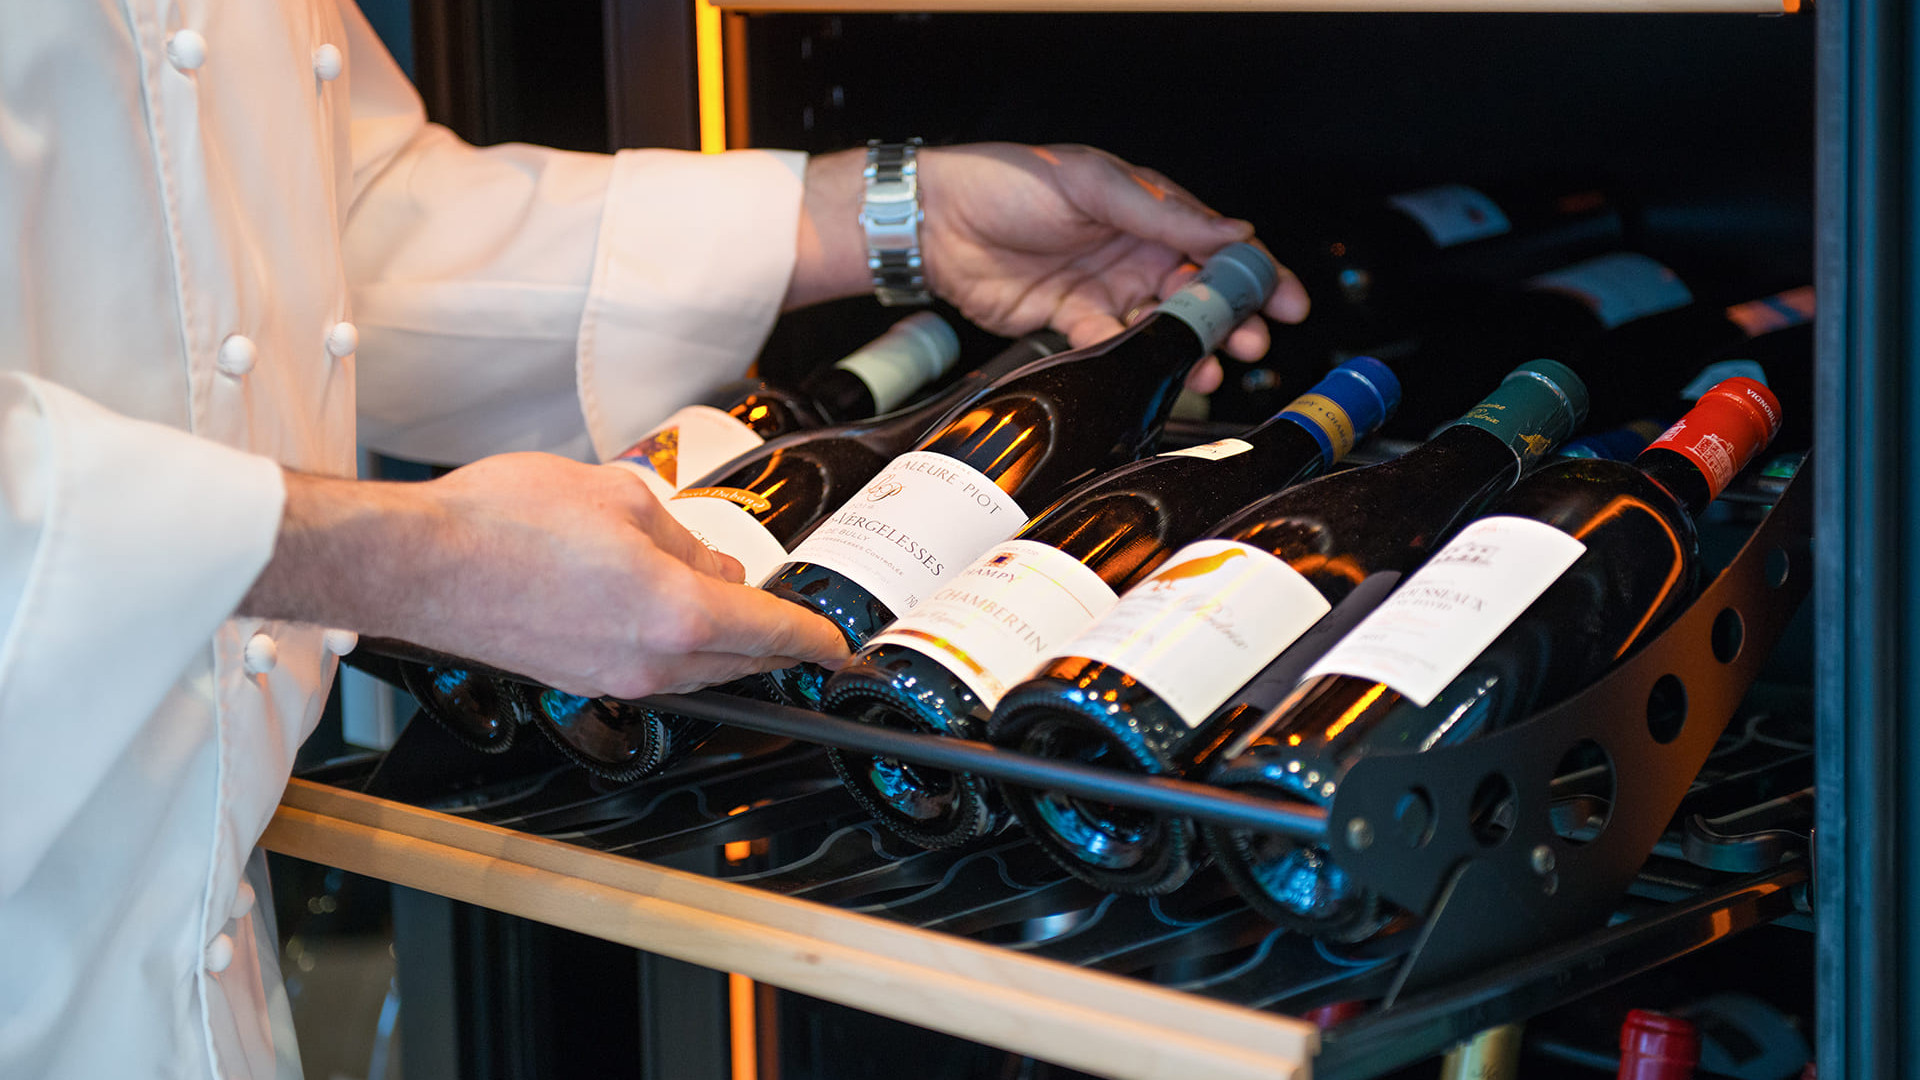 Étagère coulissante pour un accès facile aux bouteilles avec accessoire kit de présentation pour mettre en valeur votre offre vin et susciter l'intérêt du client.